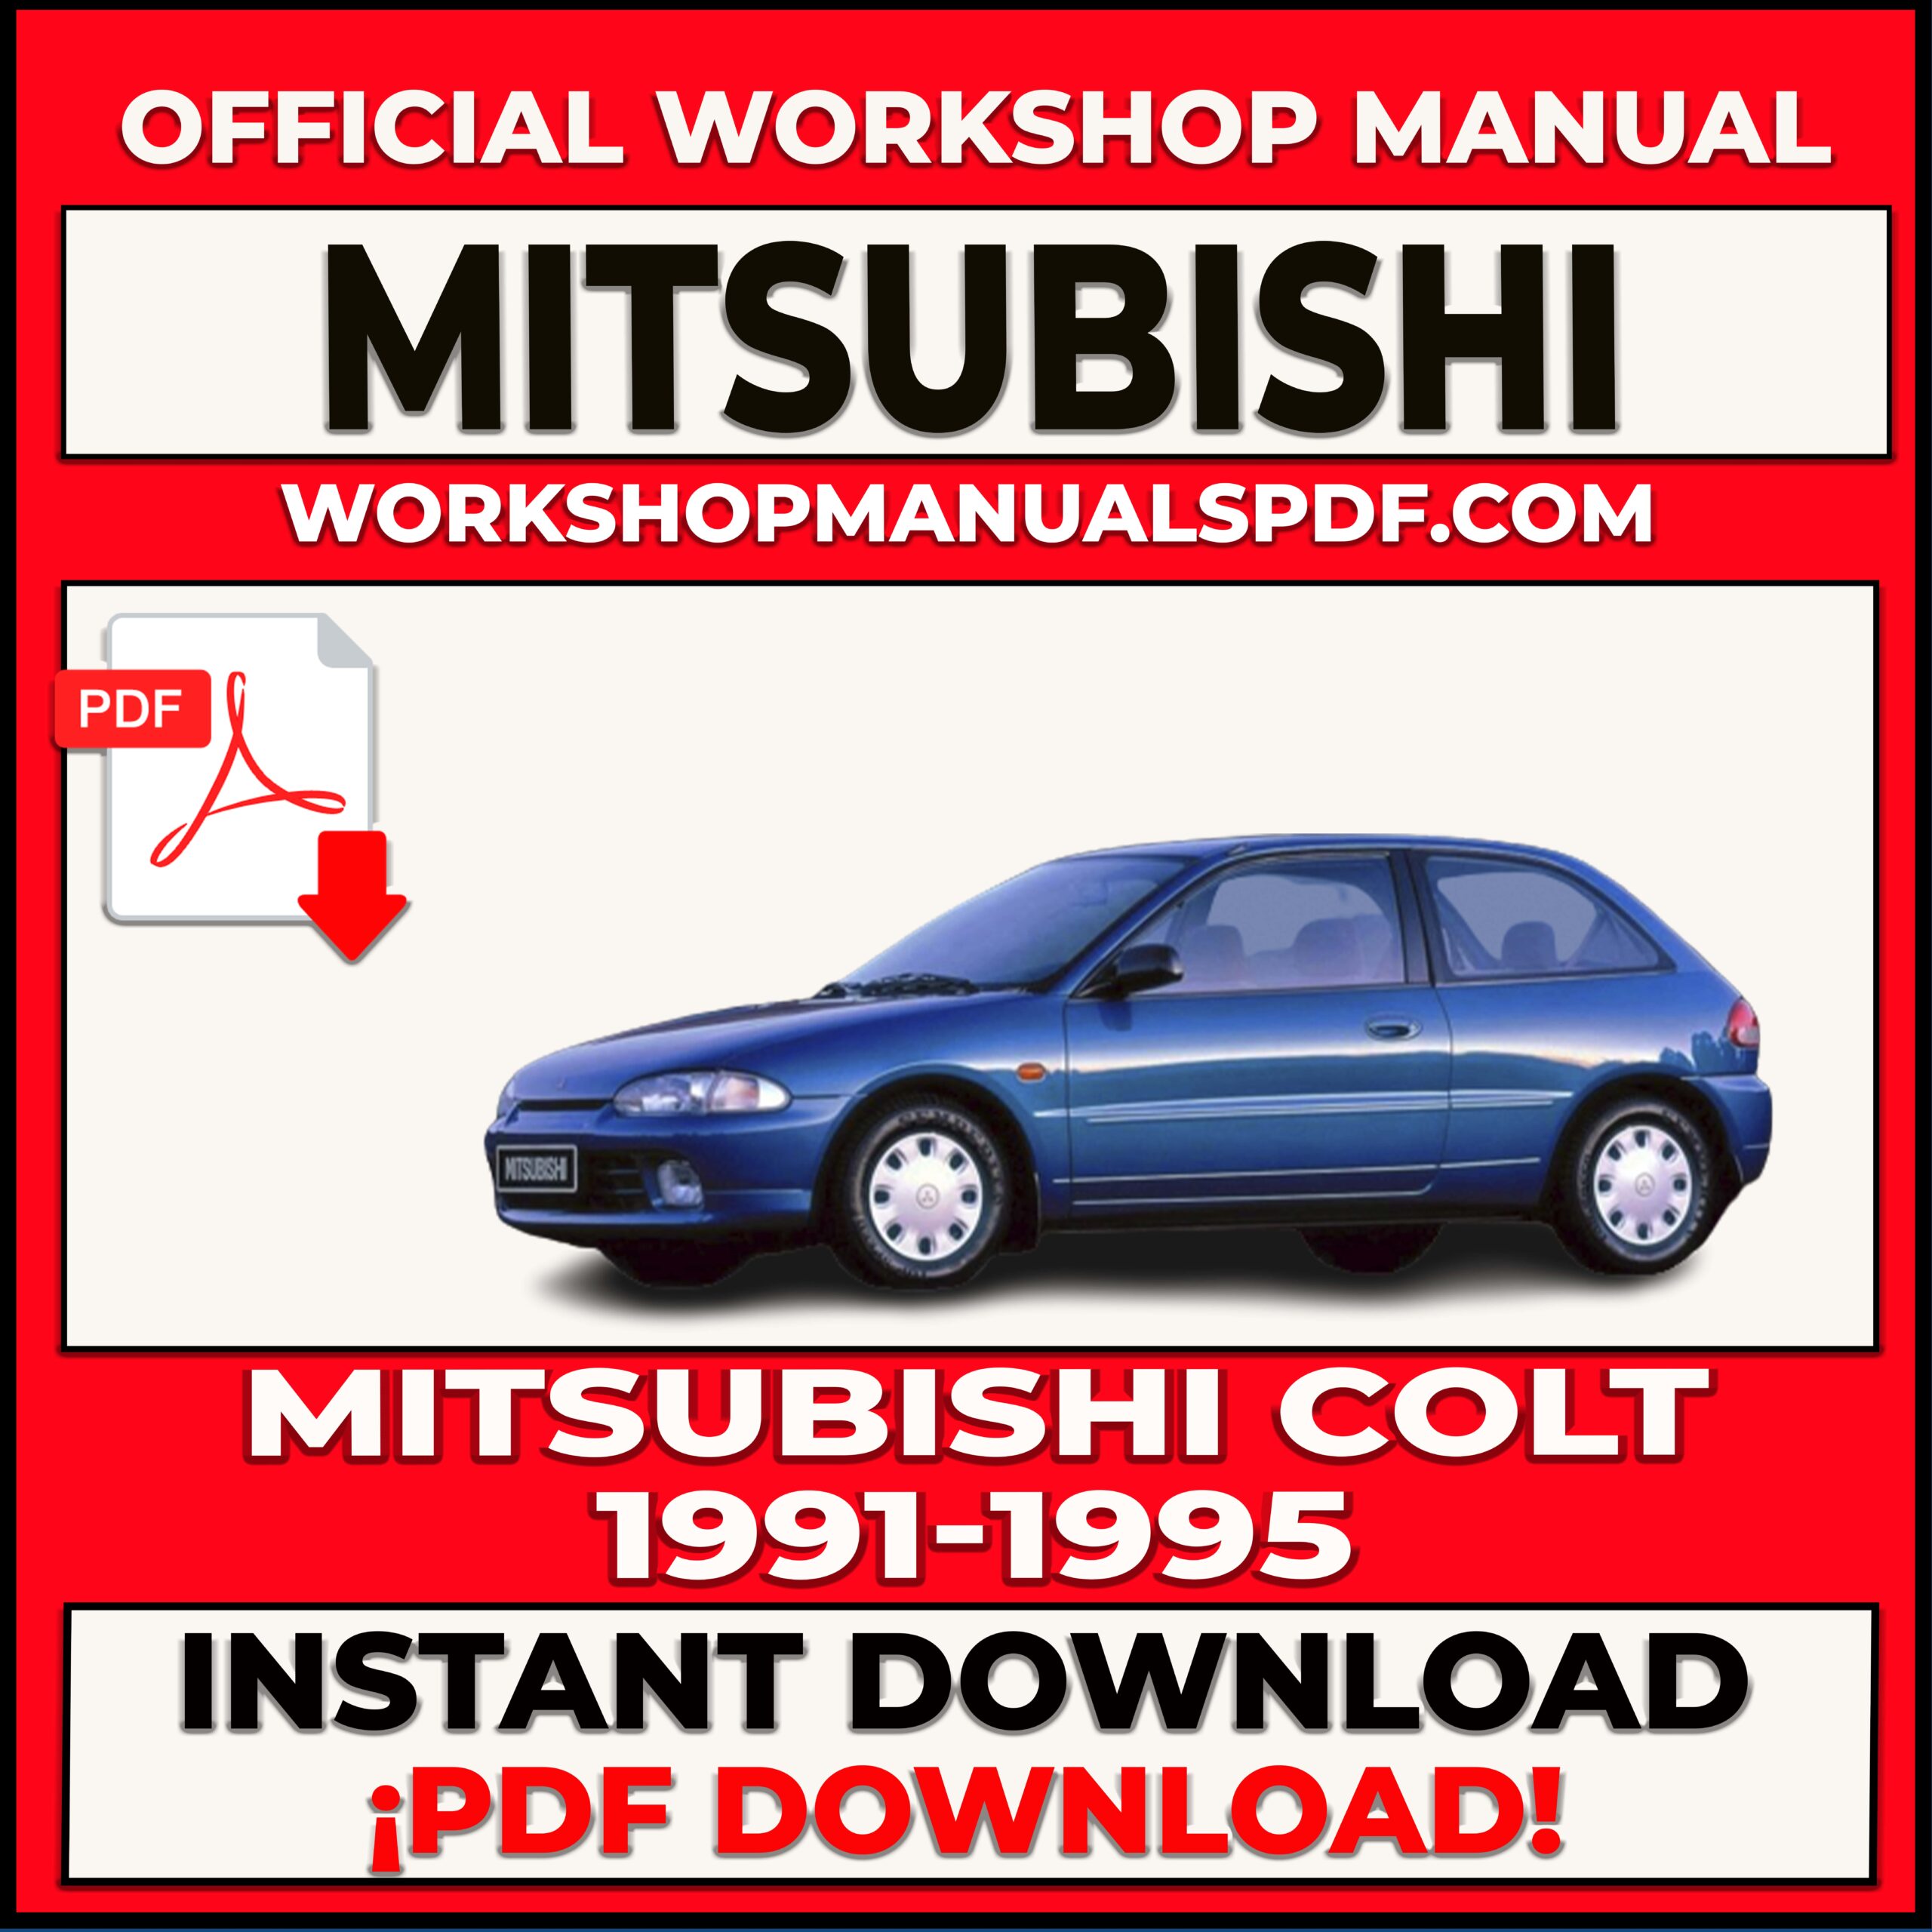 Mitsubishi Colt 1991-1995 Workshop Repair Manual